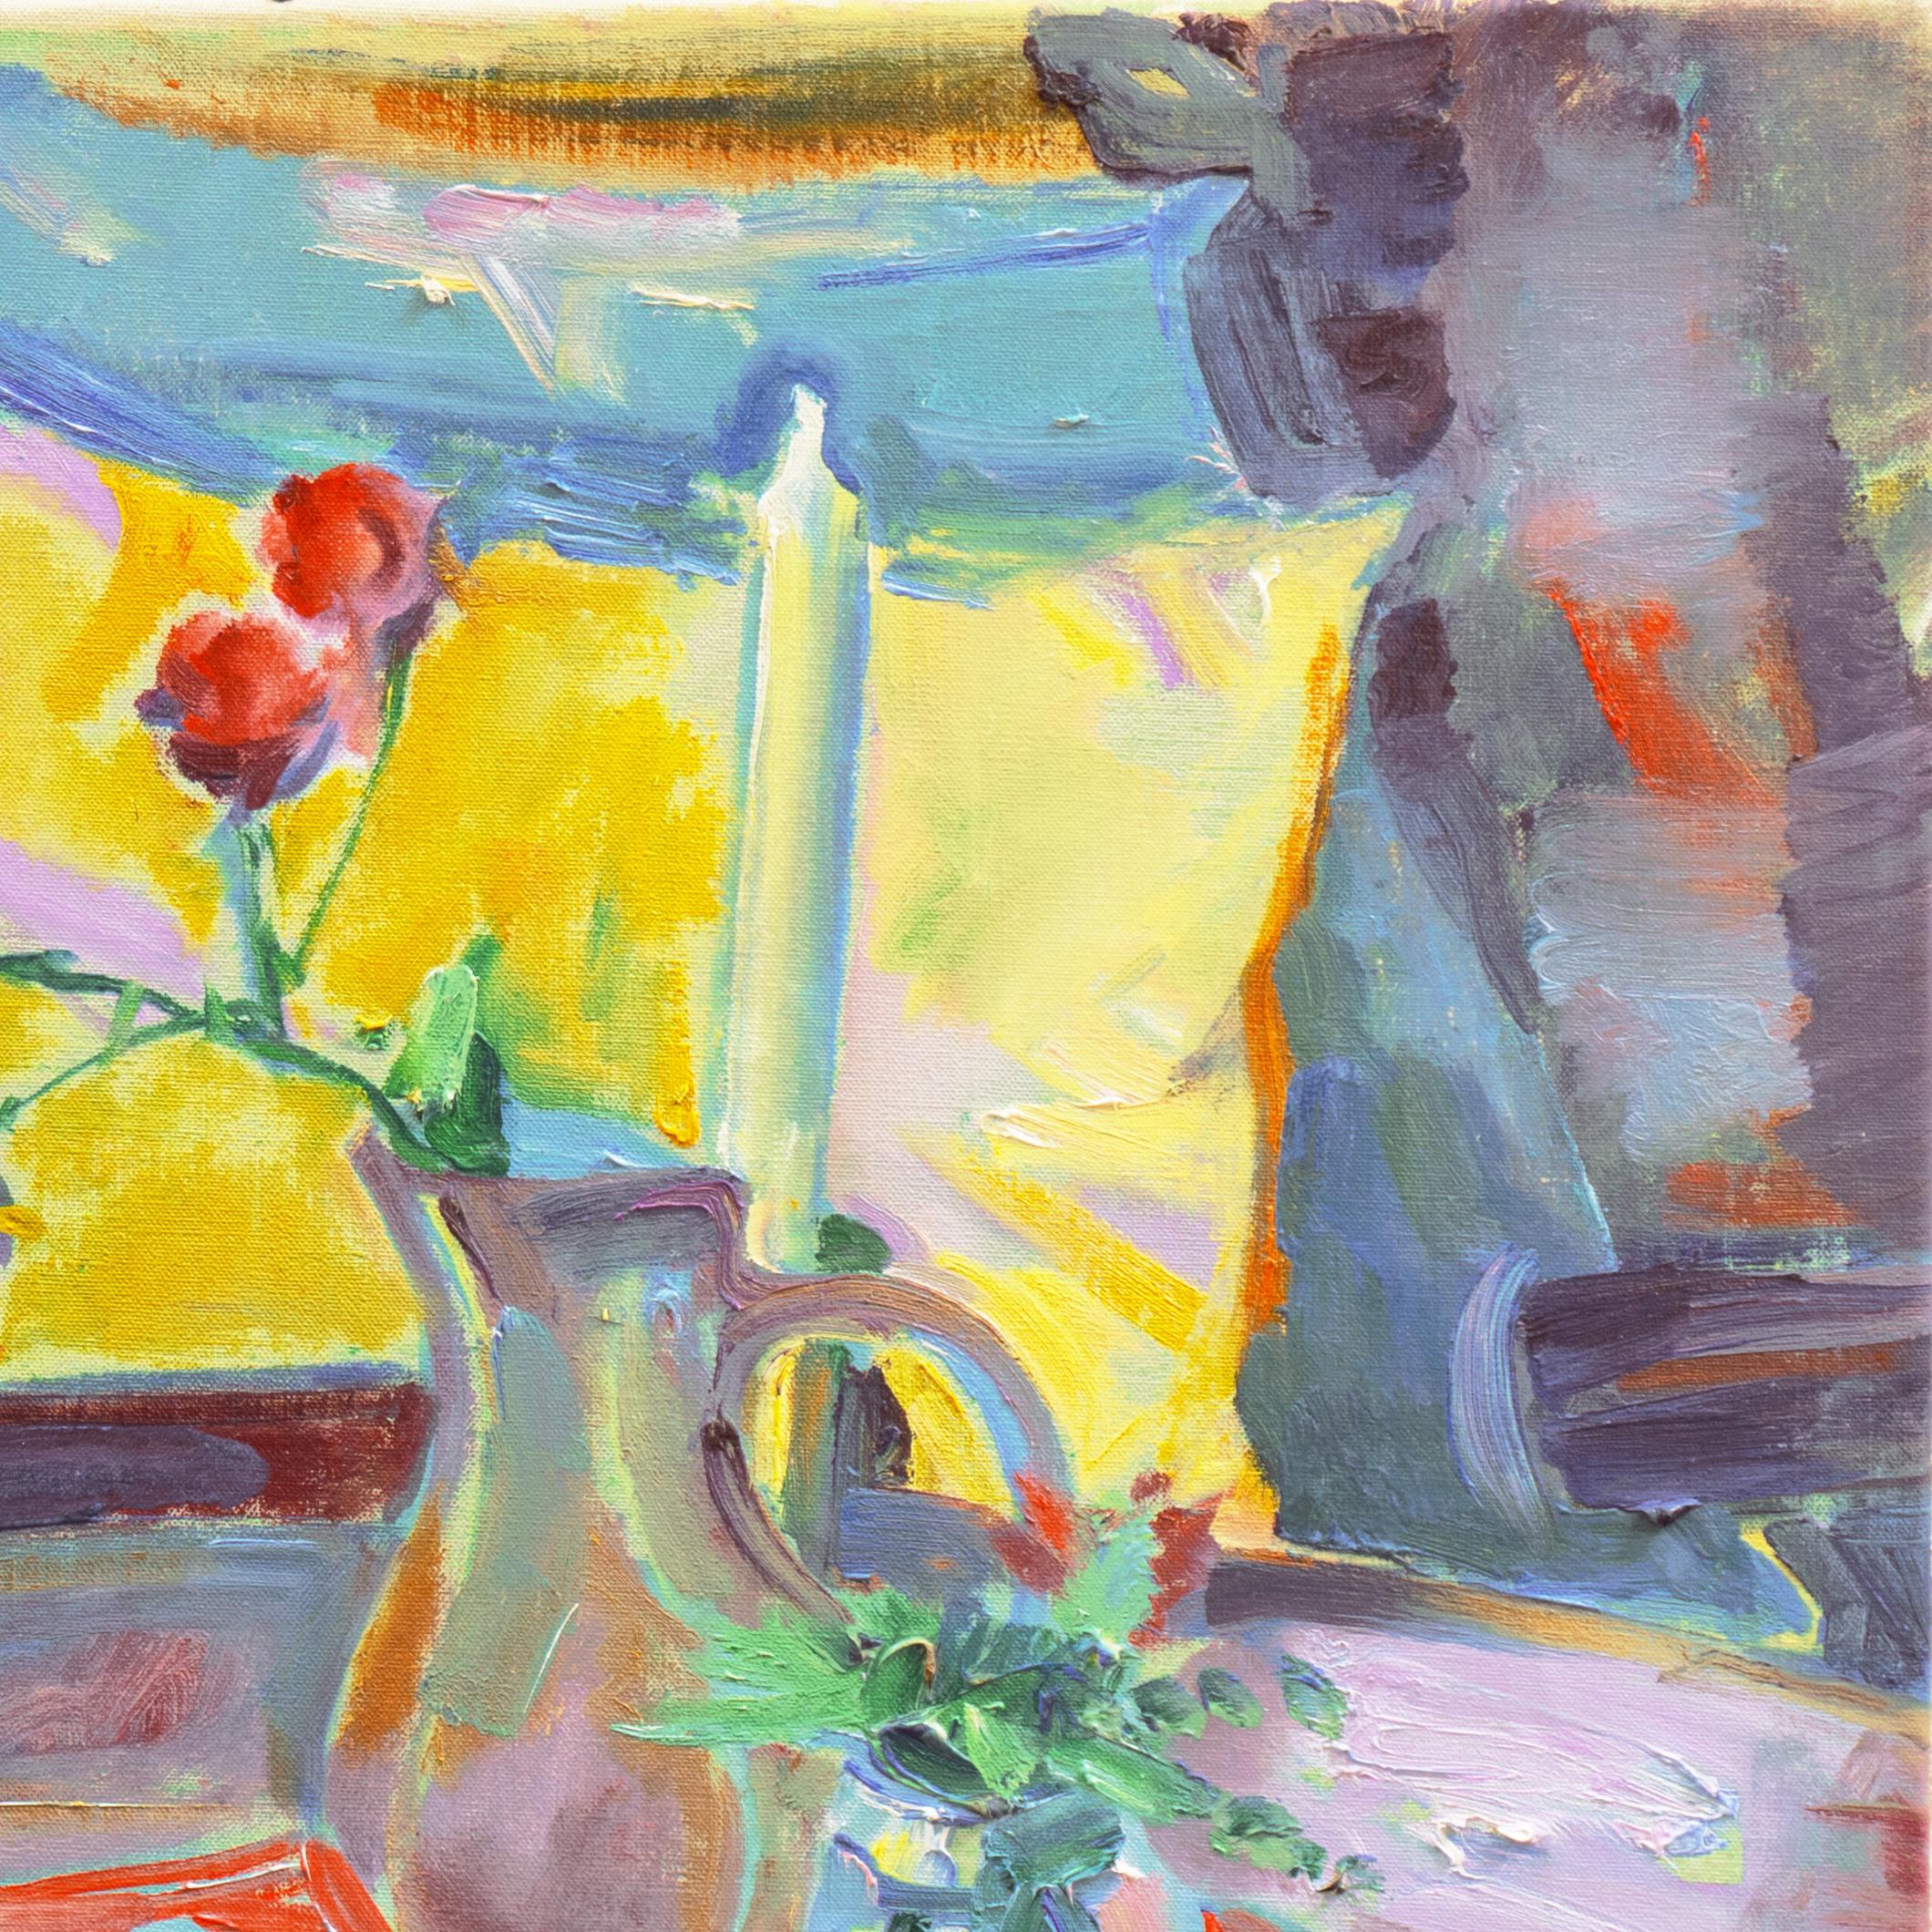 'Still Life of Roses on a Tea Table', Paris, Academie de la Palette, Benezit - Post-Impressionist Painting by Albert Naur